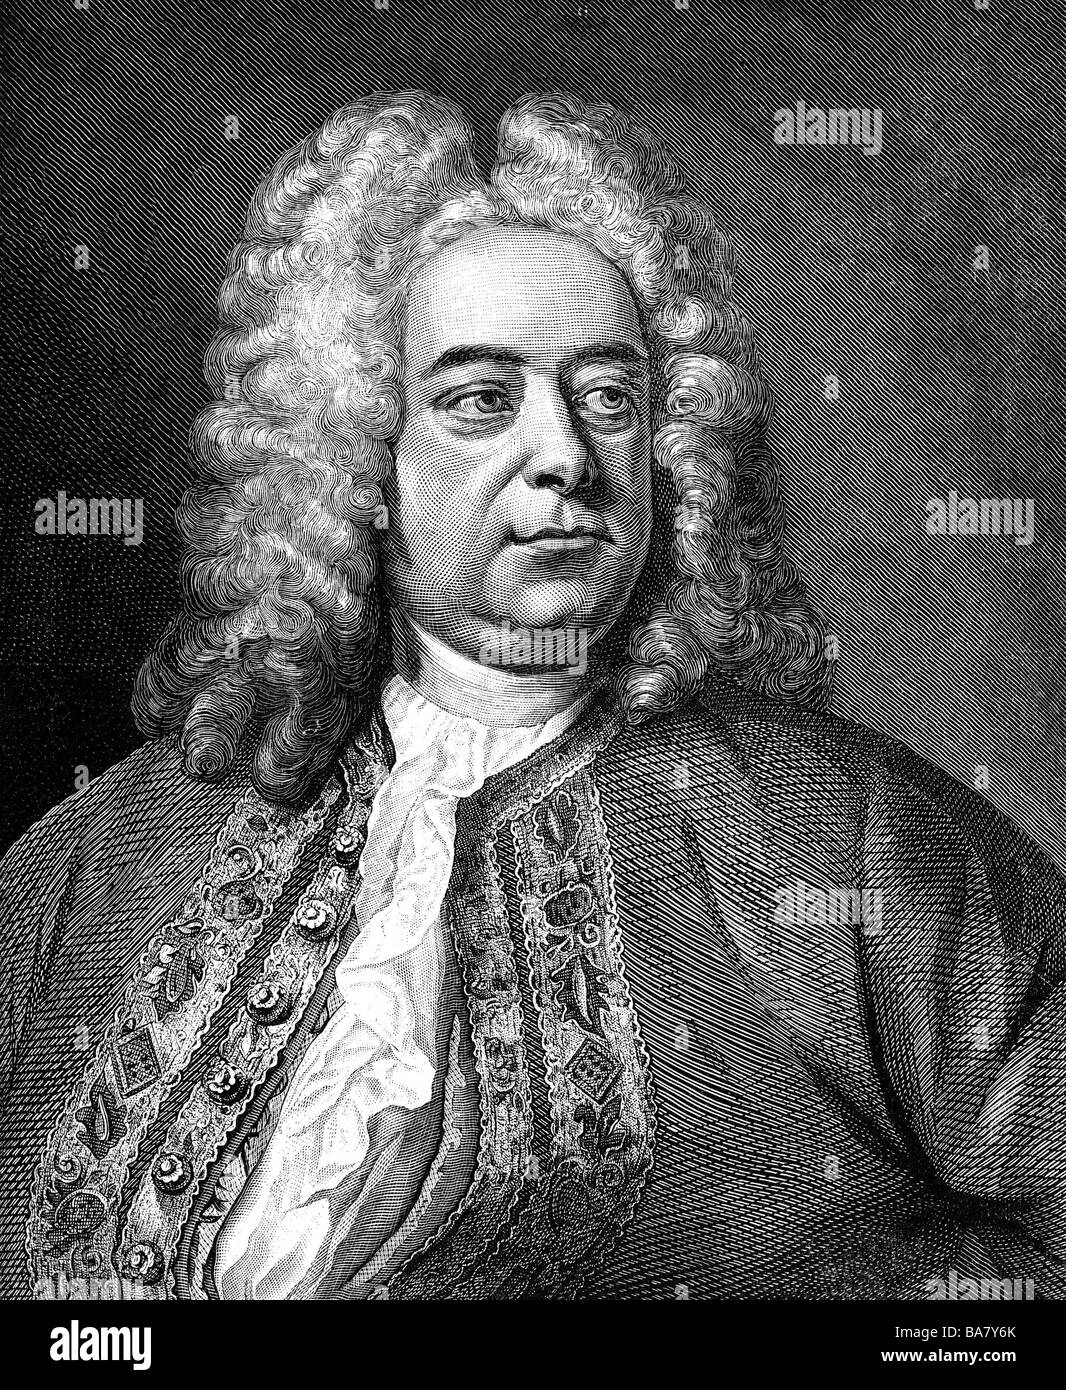 Händel, George Frederic, 23.2.1685 - 14.4.1759, compositor alemán, retrato, grabado en cobre, del siglo XVIII, , Artist's Copyright no ha de ser borrado Foto de stock